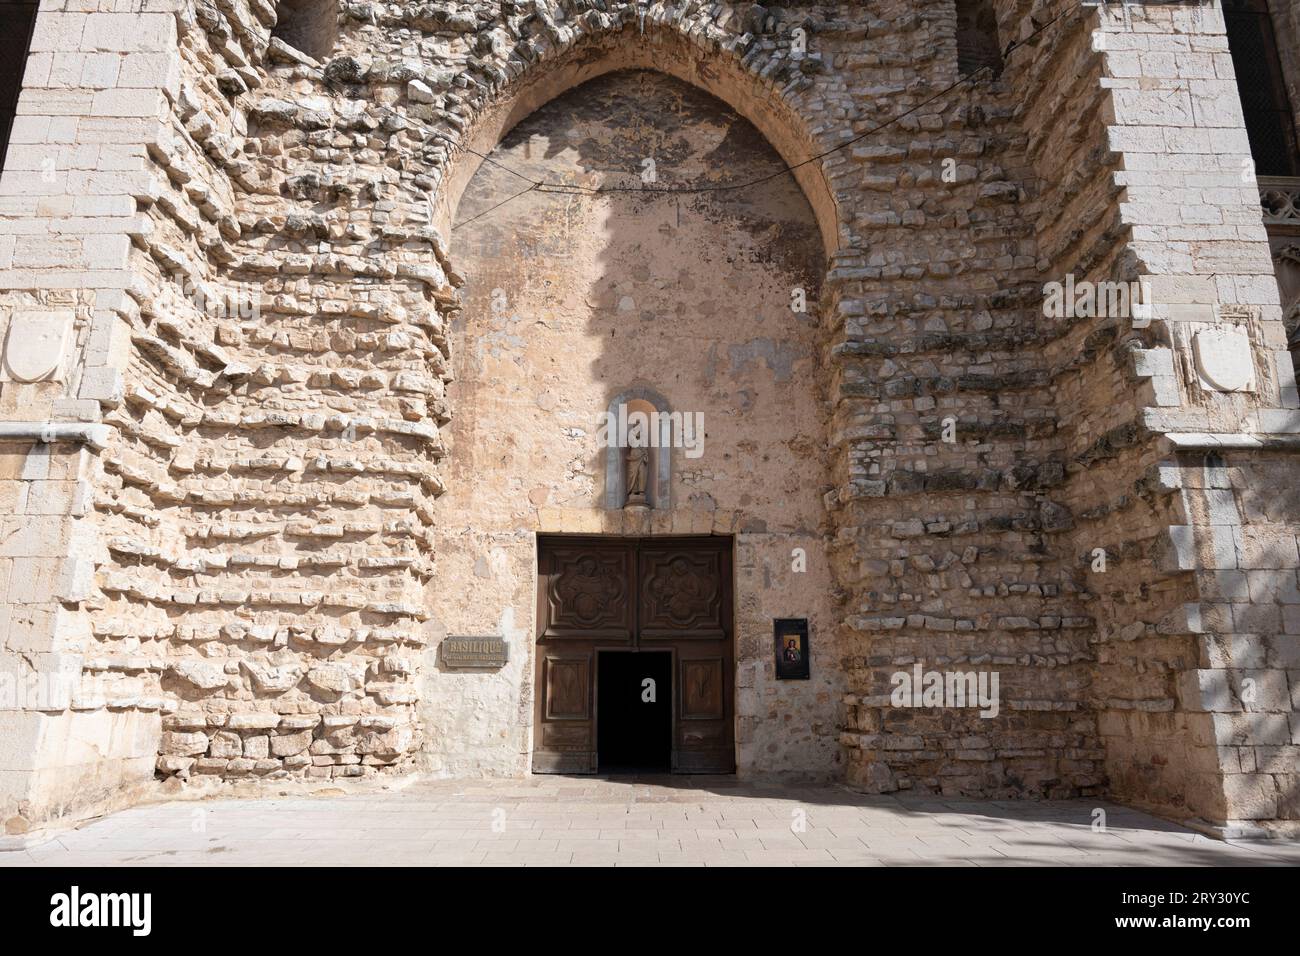 Mary Magdalene Basilica entrance, Saint Maximin La Sainte Baume, France Stock Photo